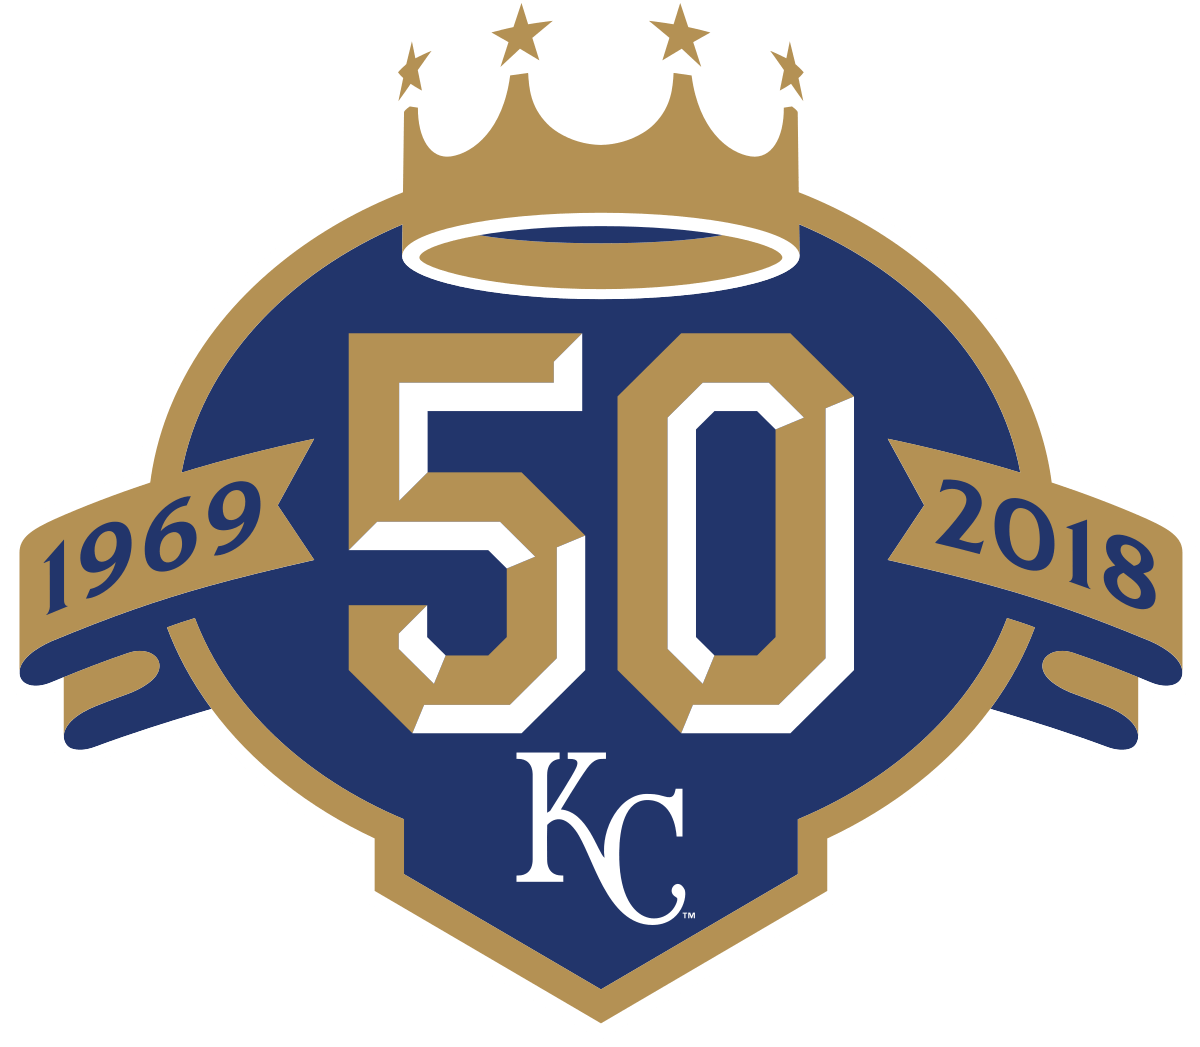 Royals Baseball Logo - 2018 Kansas City Royals season